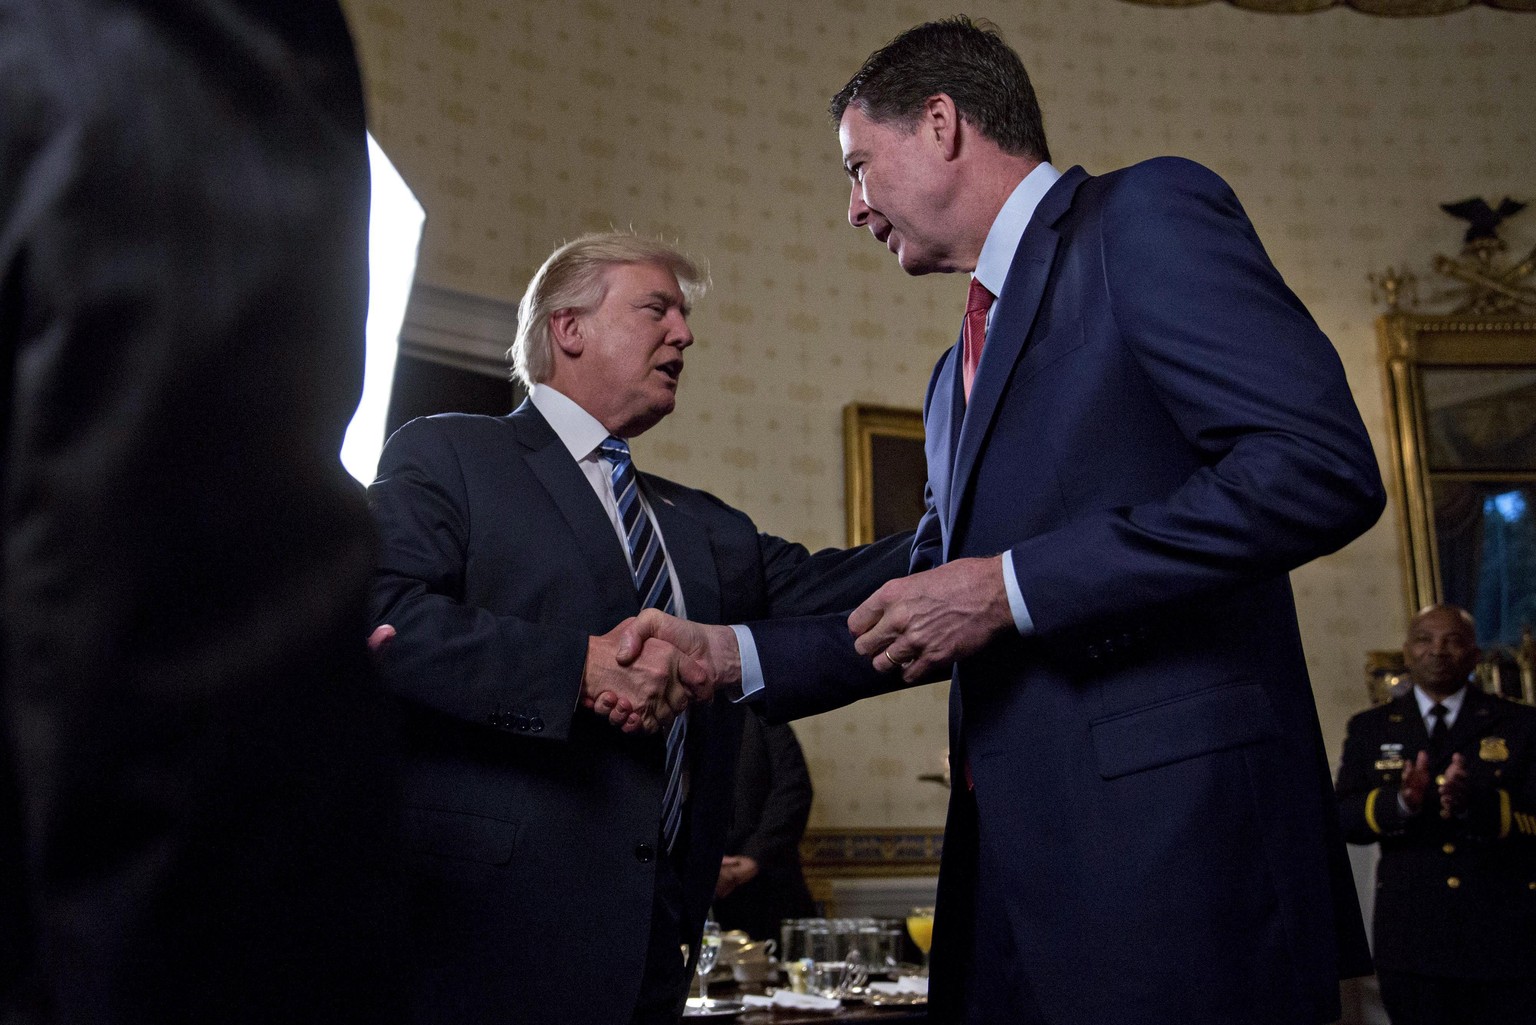 Der Händedruck trügt: FBI-Chef James Comey (rechts) ermittelt gegen Donald Trumps Wahlteam.